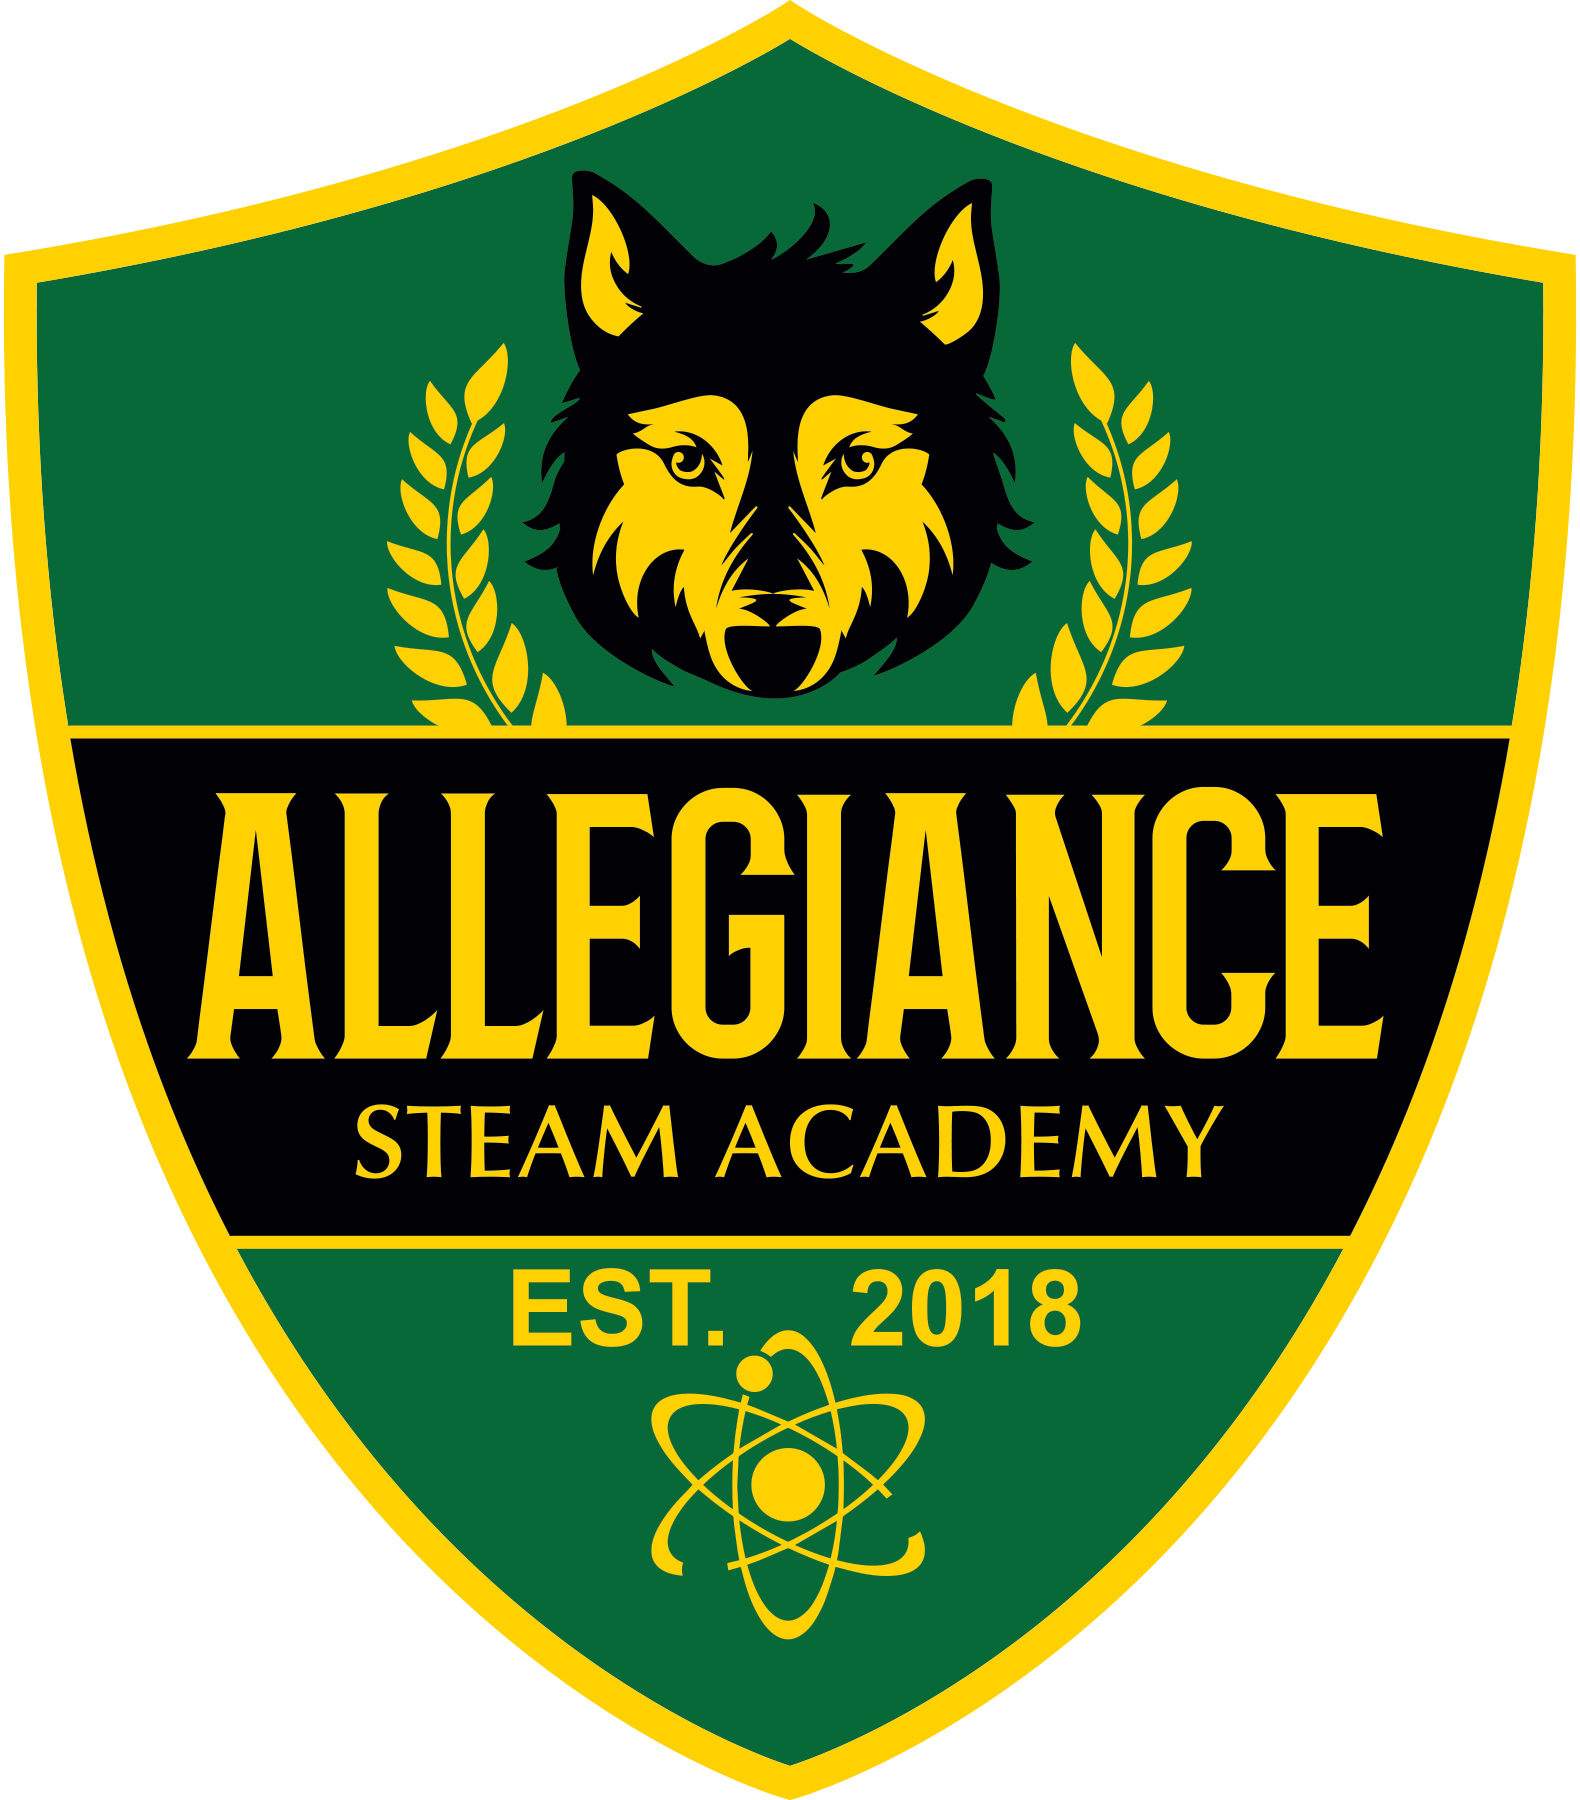 Allegiance STEAM Academy 